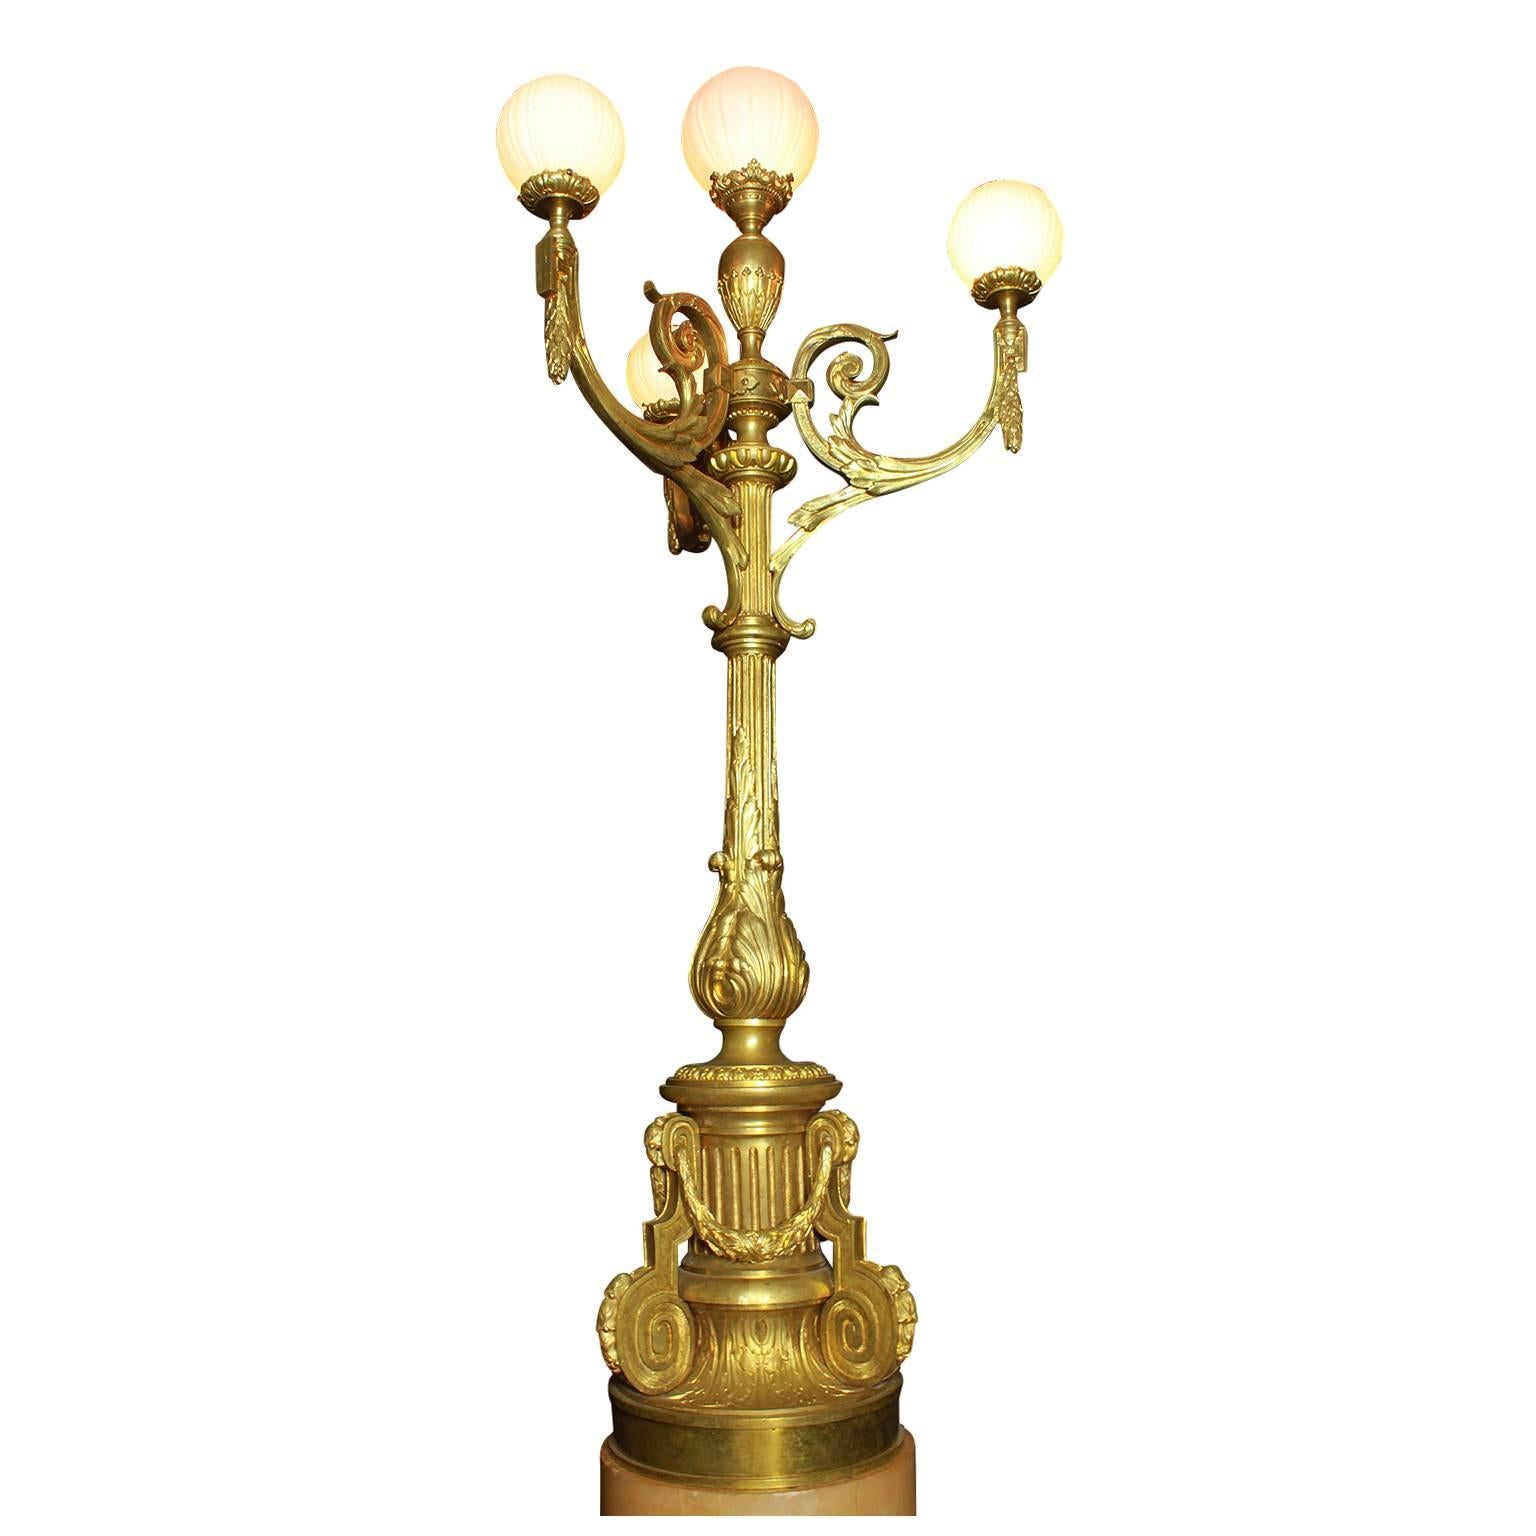 Eine schöne und große französische Fackel aus vergoldeter Bronze im Stil der Belle Époque des 19. und 20. Jahrhunderts mit Lorbeerkränzen und weißen Opalglaskugeln, auf einem zweifarbigen, runden Marmorsockel, um 1900, Paris.

Gesamthöhe: 99 1/2